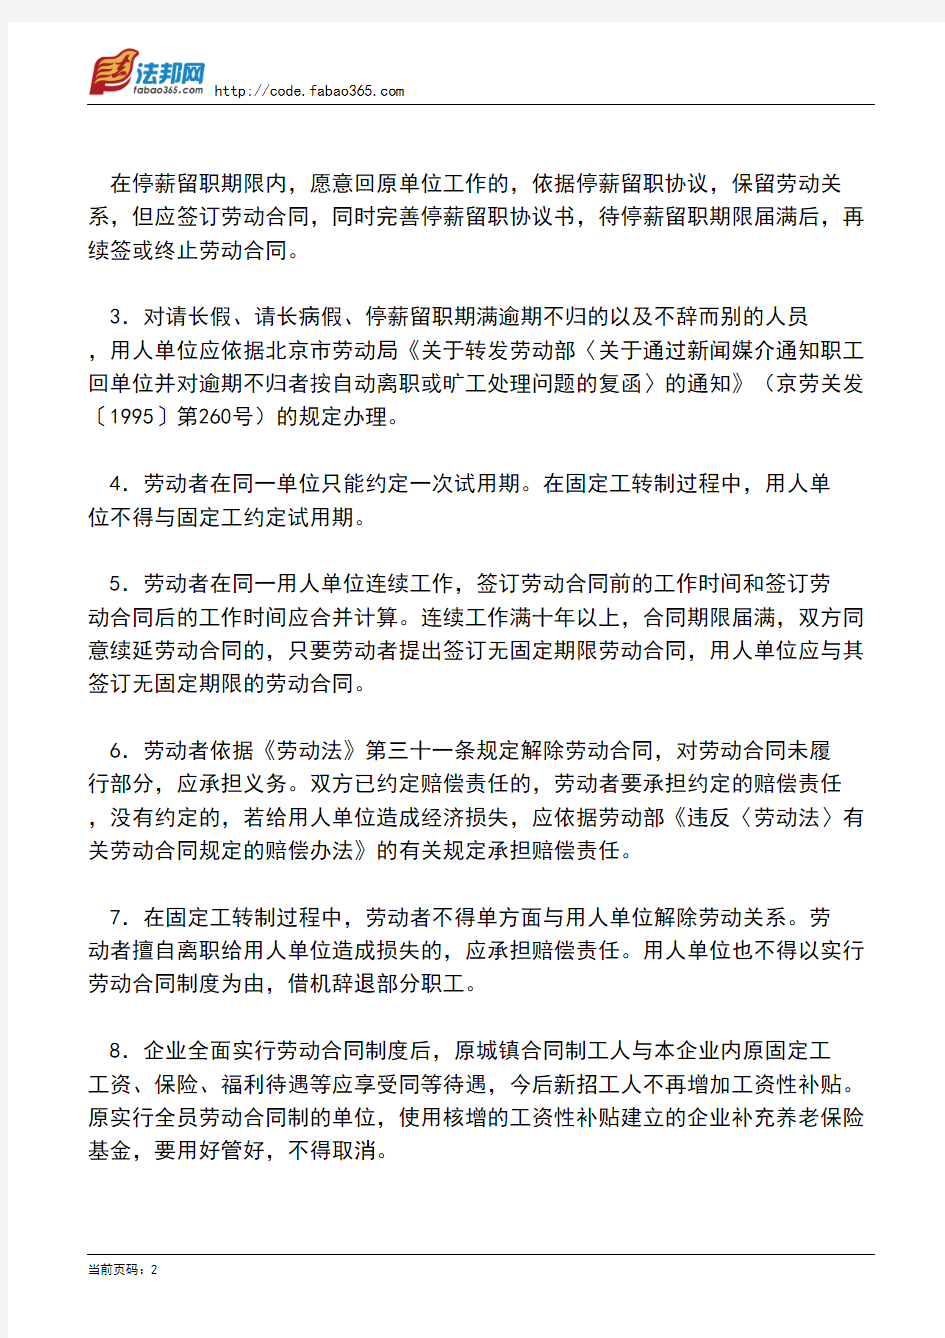 北京市劳动局关于转发劳动部《关于贯彻执行＜中华人民共和国劳动法＞若干问题的意见》的通知